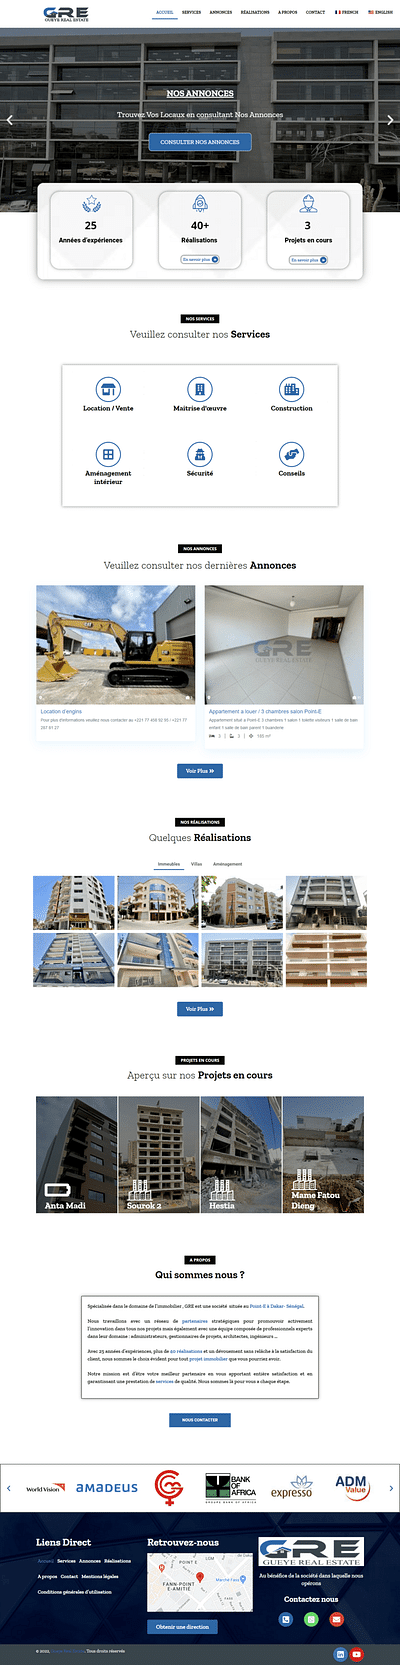 Création du site web Gueye Real Estate - Creazione di siti web